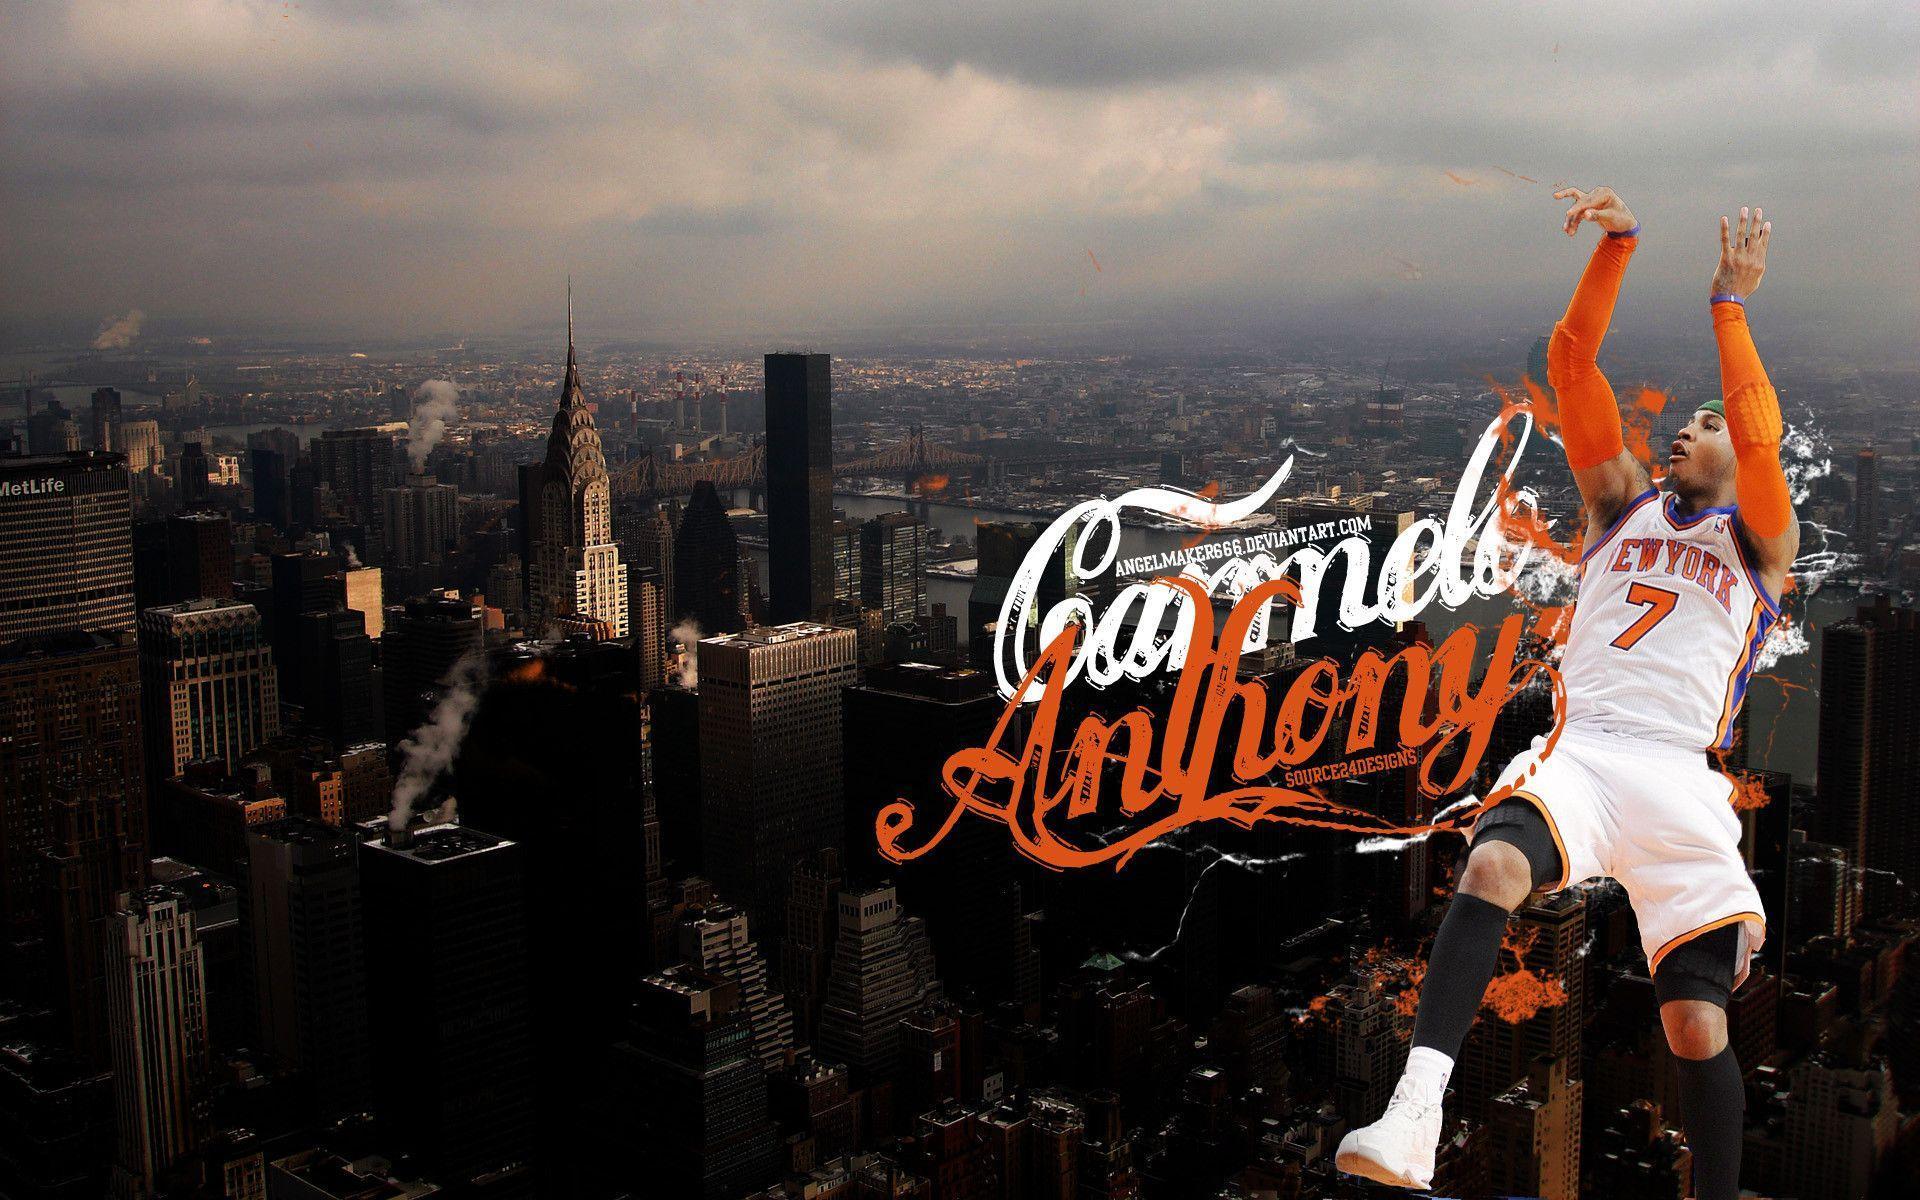 New York Knicks wallpaper HD background download desktop • iPhones